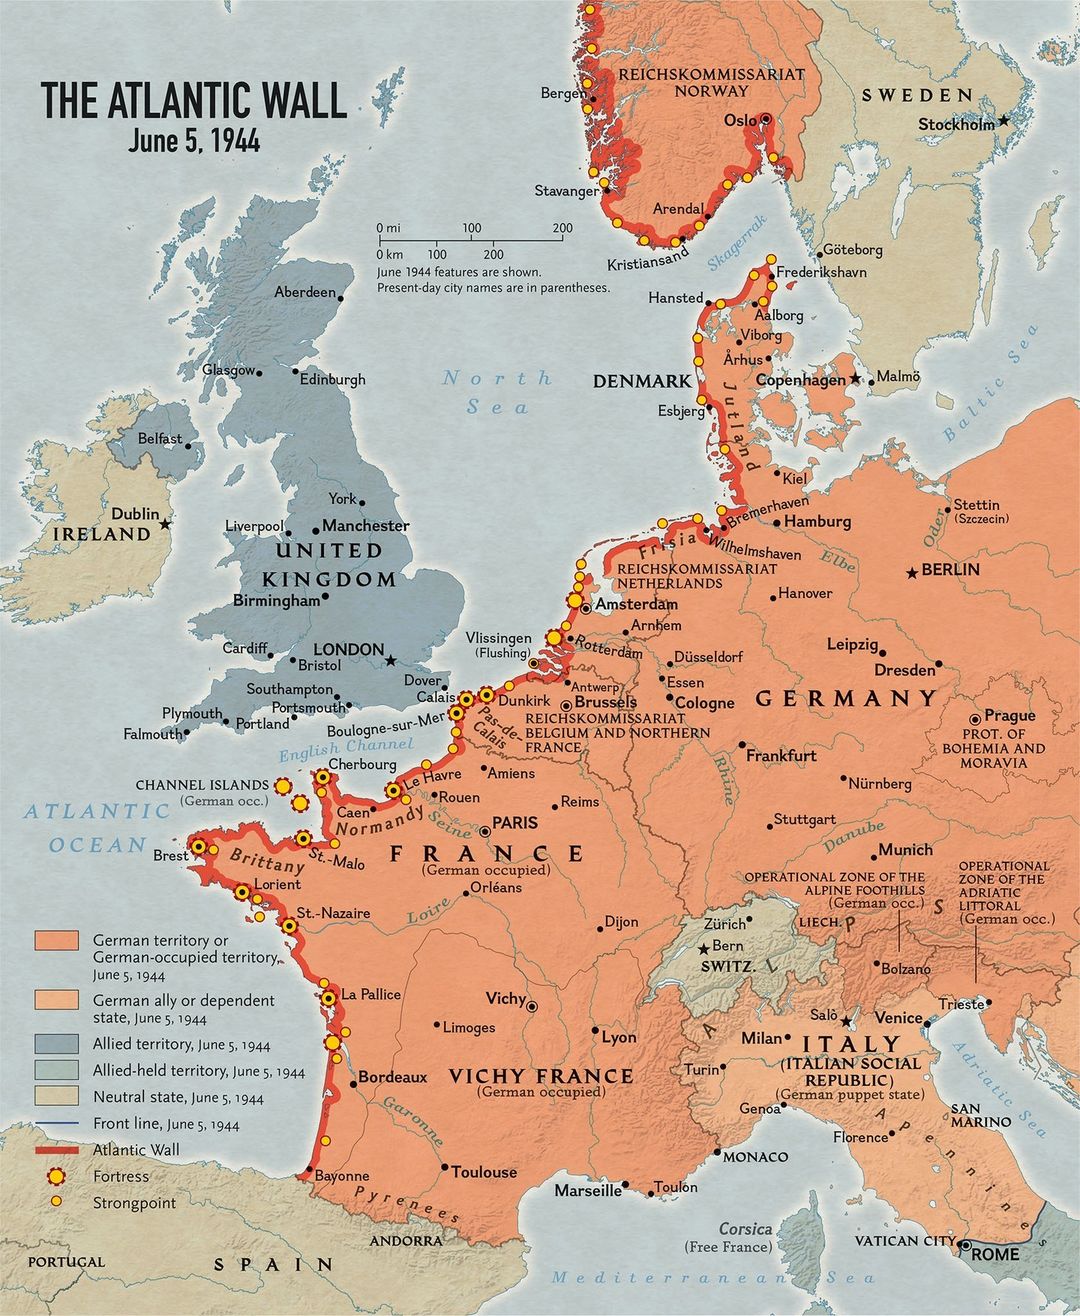 Wał Atlantycki – system umocnień ciągnących się na długości 3862 km wzdłuż zachodnich wybrzeży Europy, czerwiec 1944